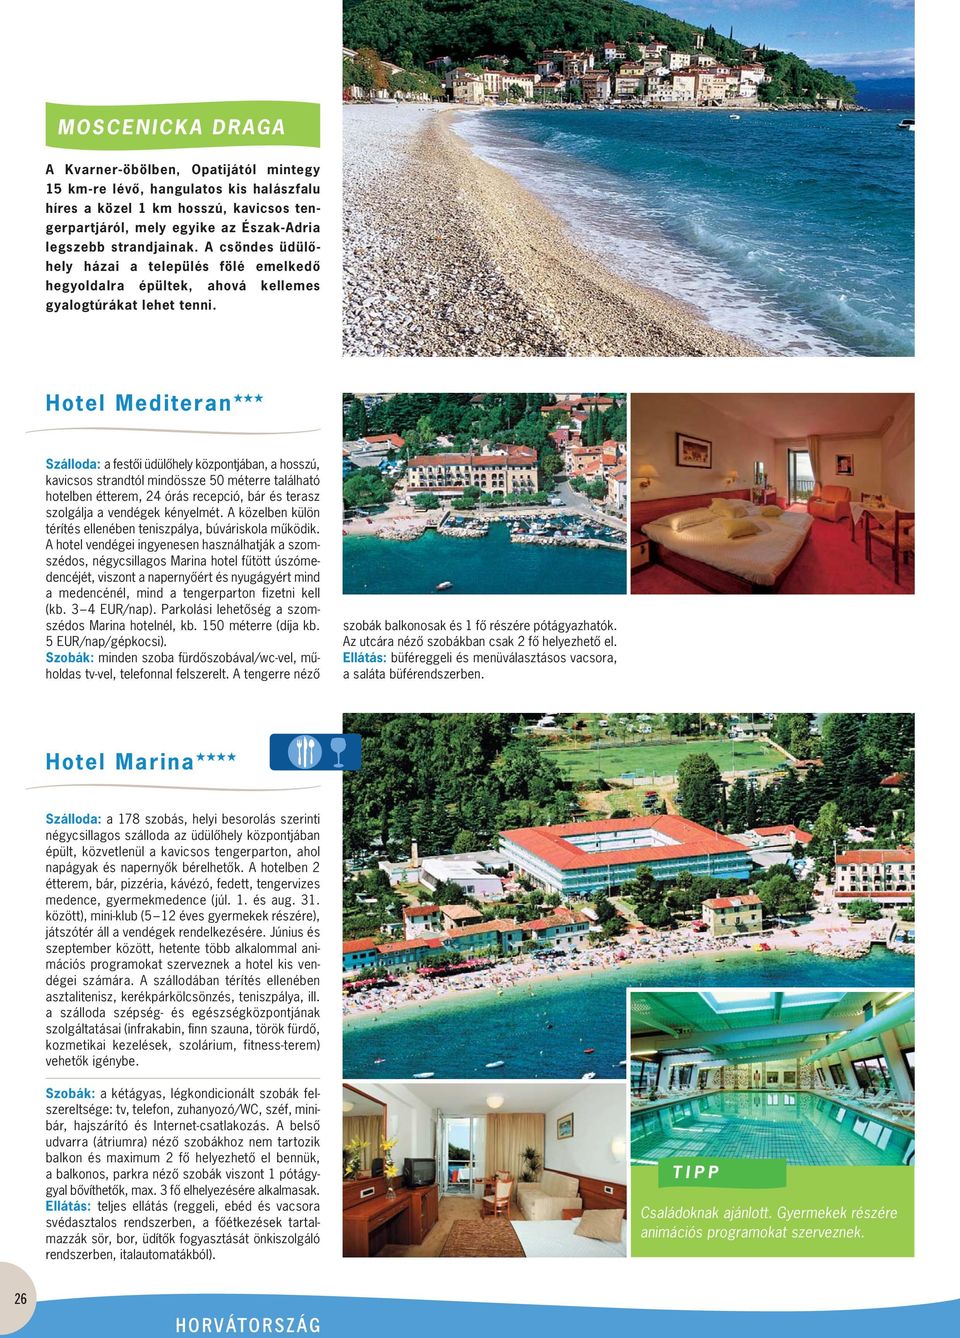 Hotel Mediteran Szálloda: a festôi üdülôhely központjában, a hosszú, kavicsos strandtól mindössze 50 méterre található hotelben étterem, 24 órás recepció, bár és terasz szolgálja a vendégek kényelmét.